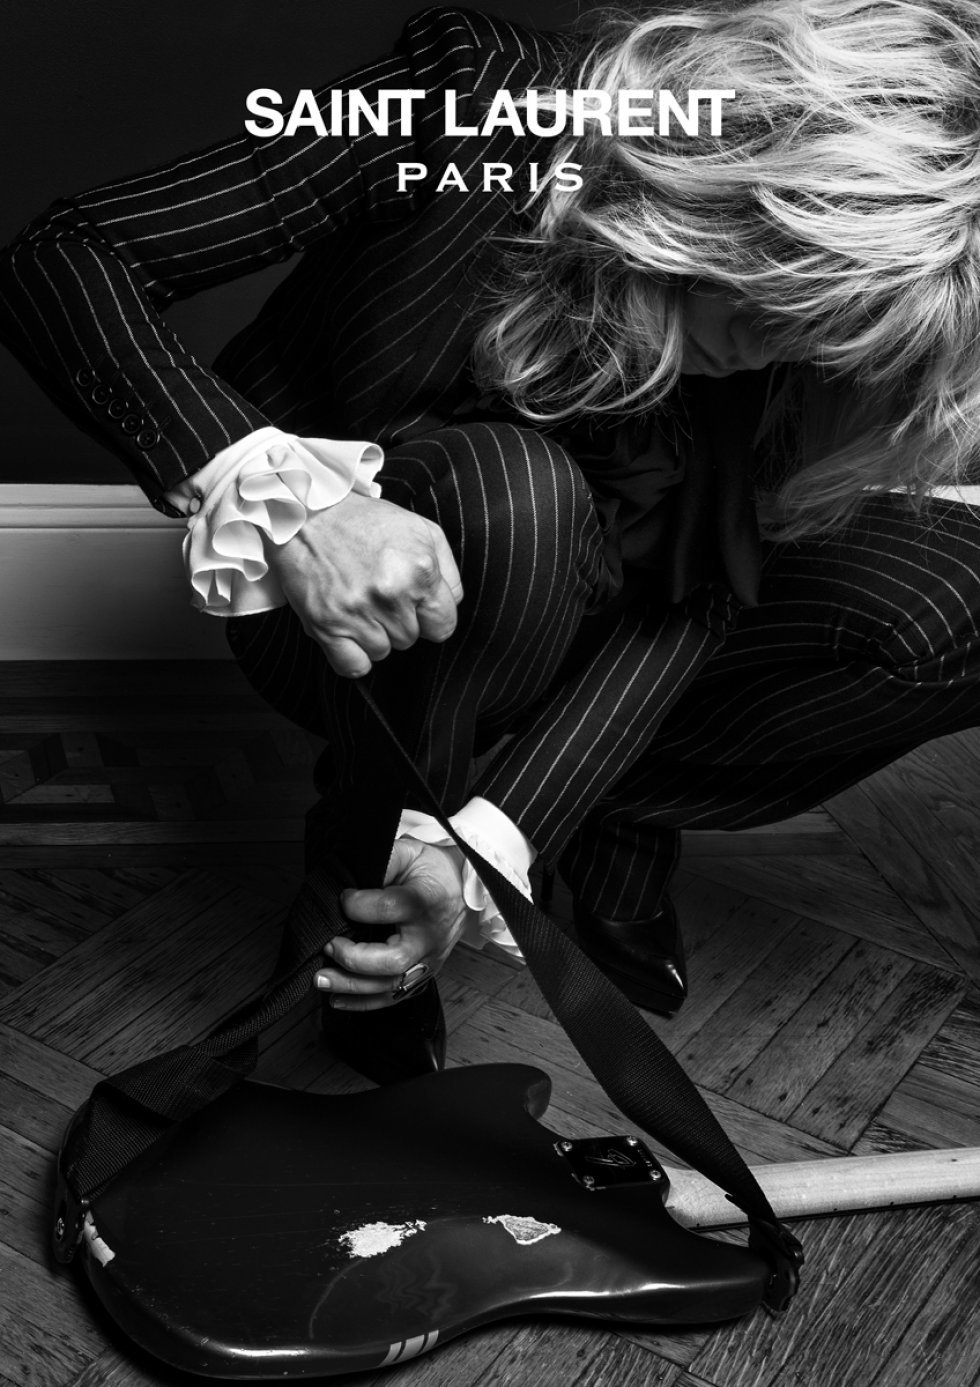 Courtney Love iført klassisk nålestribet Saint Laurent jakkesæt - Pressefoto: Saint Laurent - Yves Saint Laurent sammensmelter ikonisk mode og musik på ny